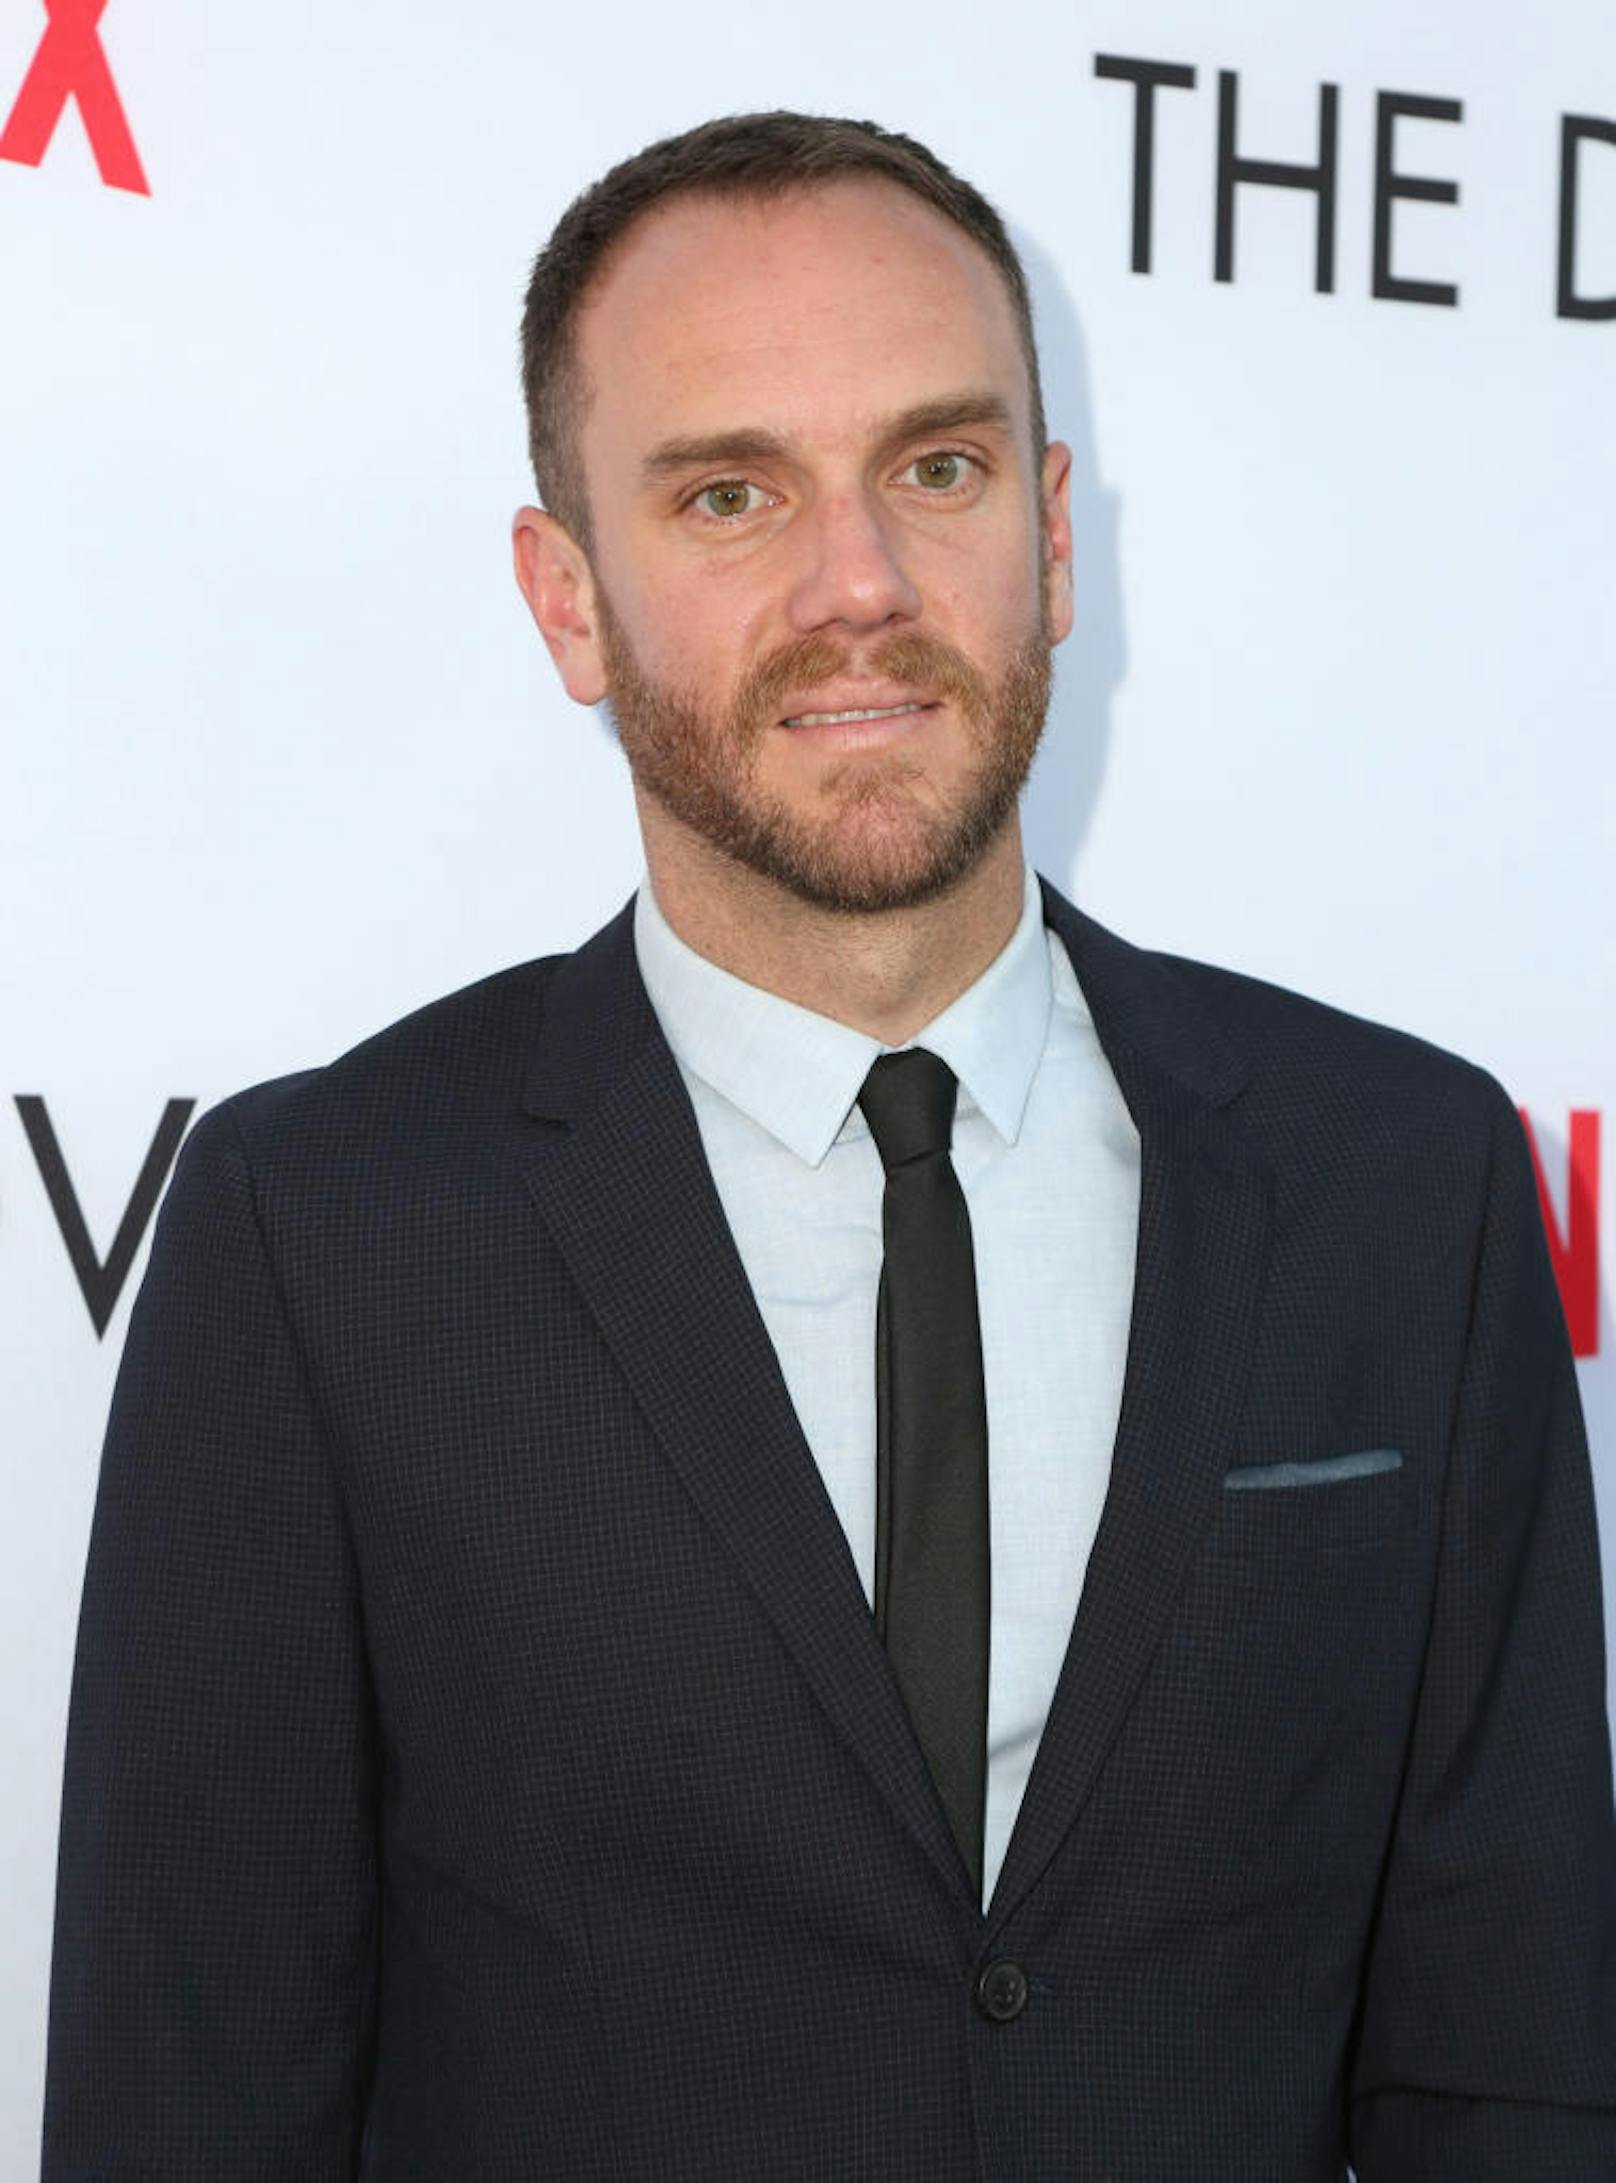 Charlie McDowell am 29. März 2017 bei der Premiere von Netflix' "The Discovery" in Los Angeles 